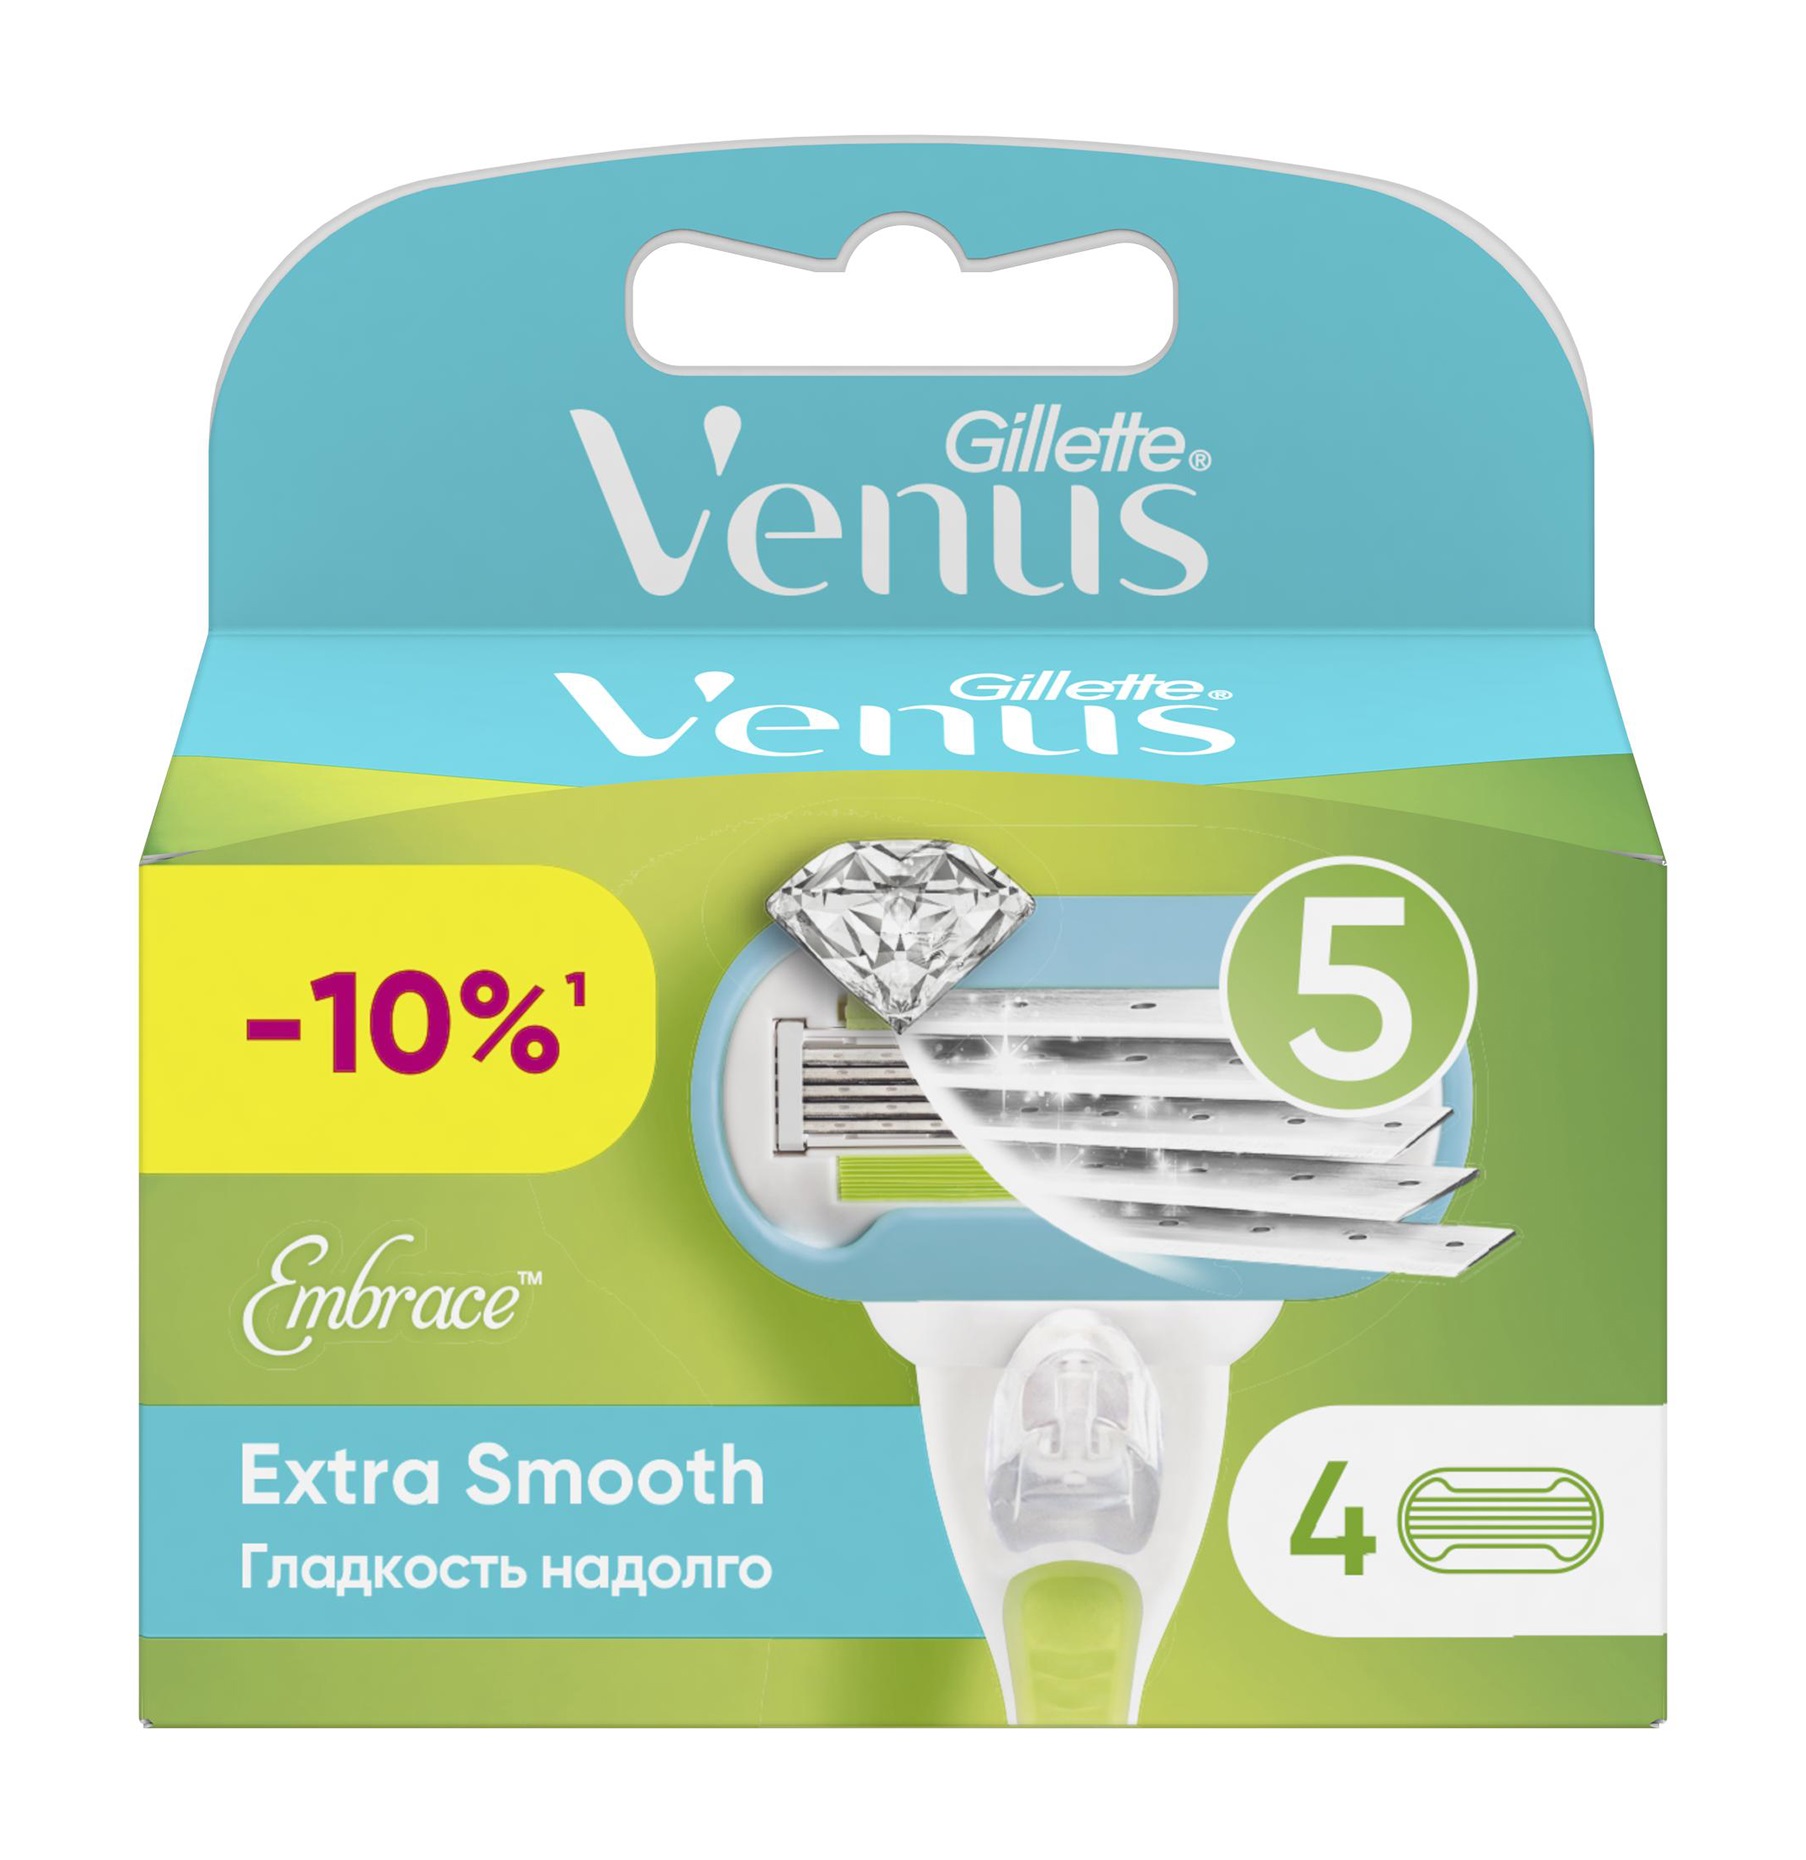 Кассеты для бритья Gillette Venus Embrace 4 Шт. gillette кассеты для станка gillette venus embrace 4 шт